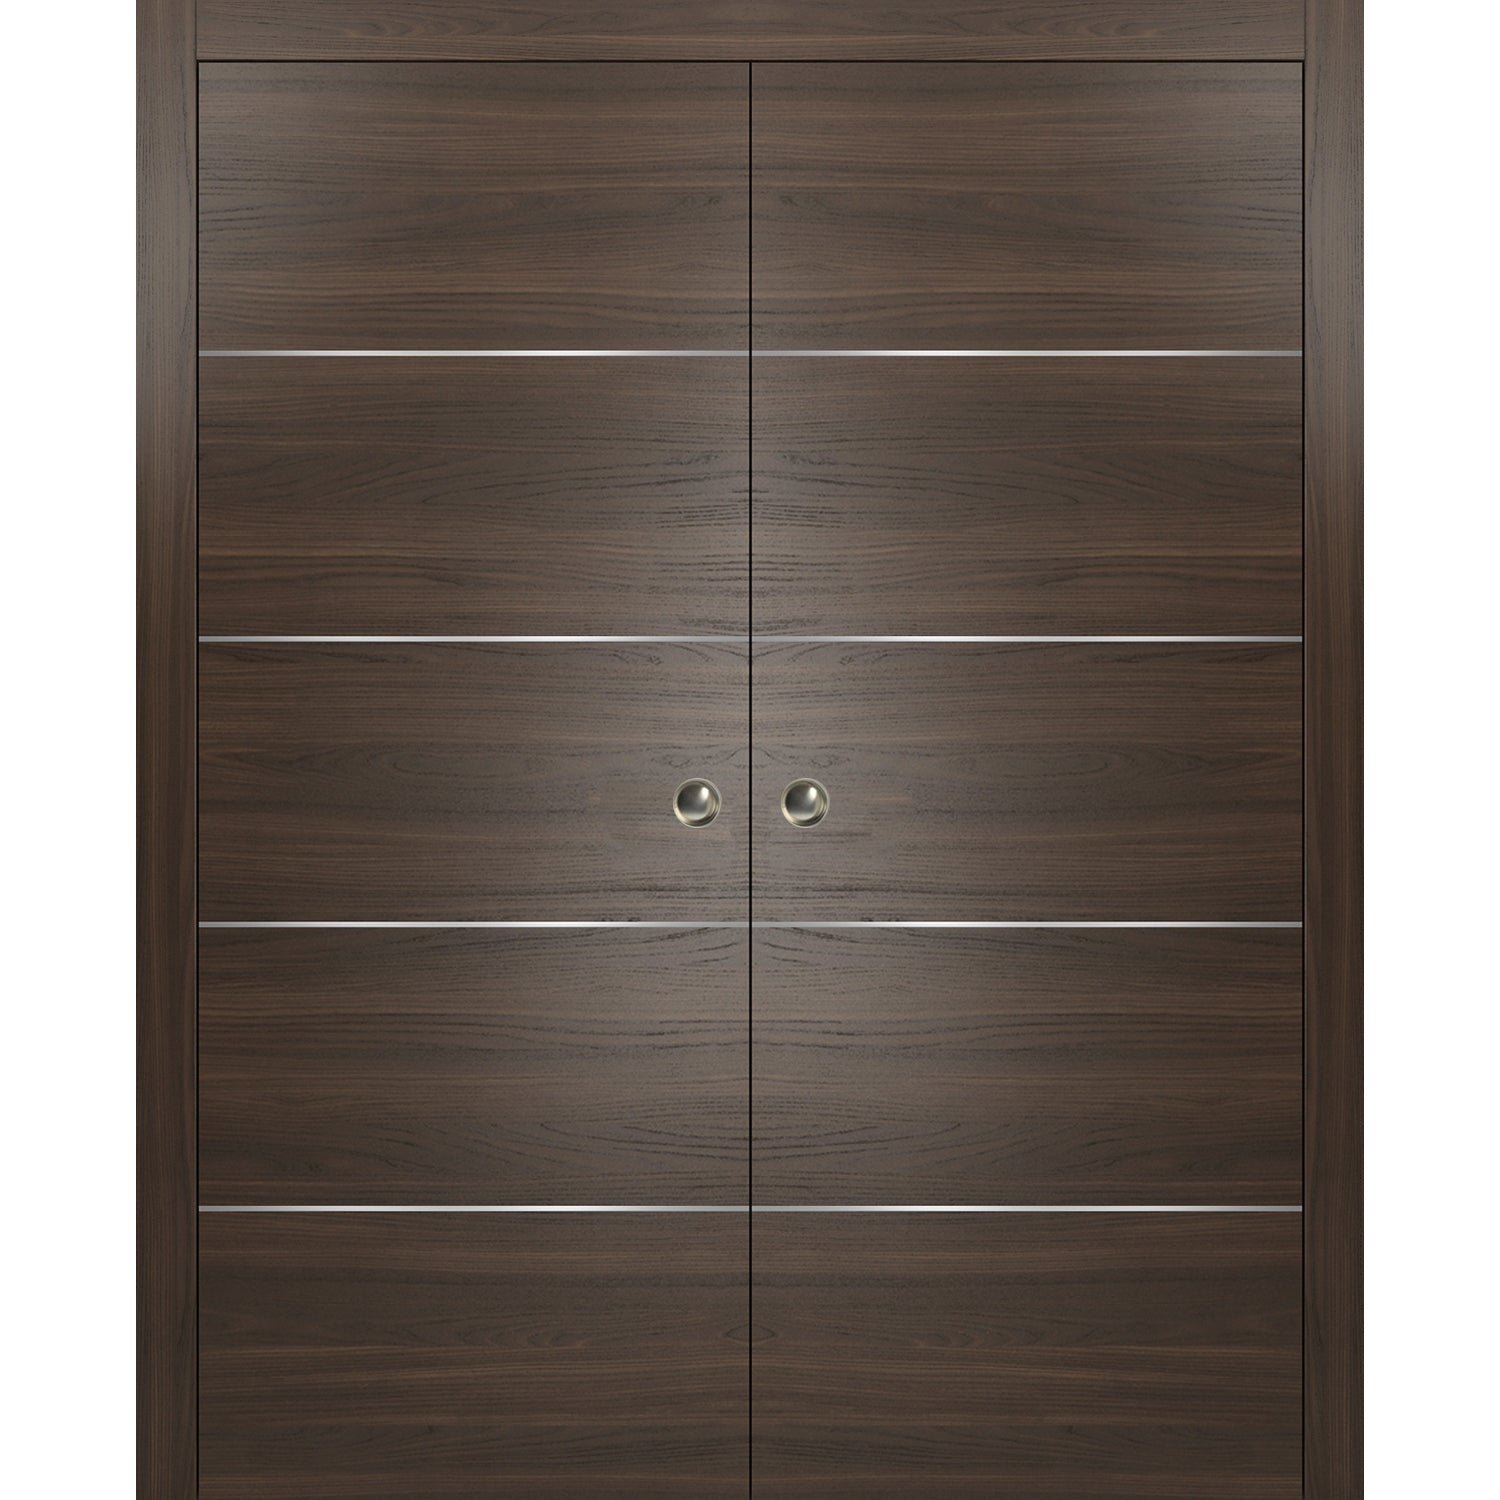 SARTODOORS Double Pocket Sliding Brown Doors 36 x 84 with Strips | Planum 0020 Chocolate Ash | Frames Pulls Hardware |Wood Door